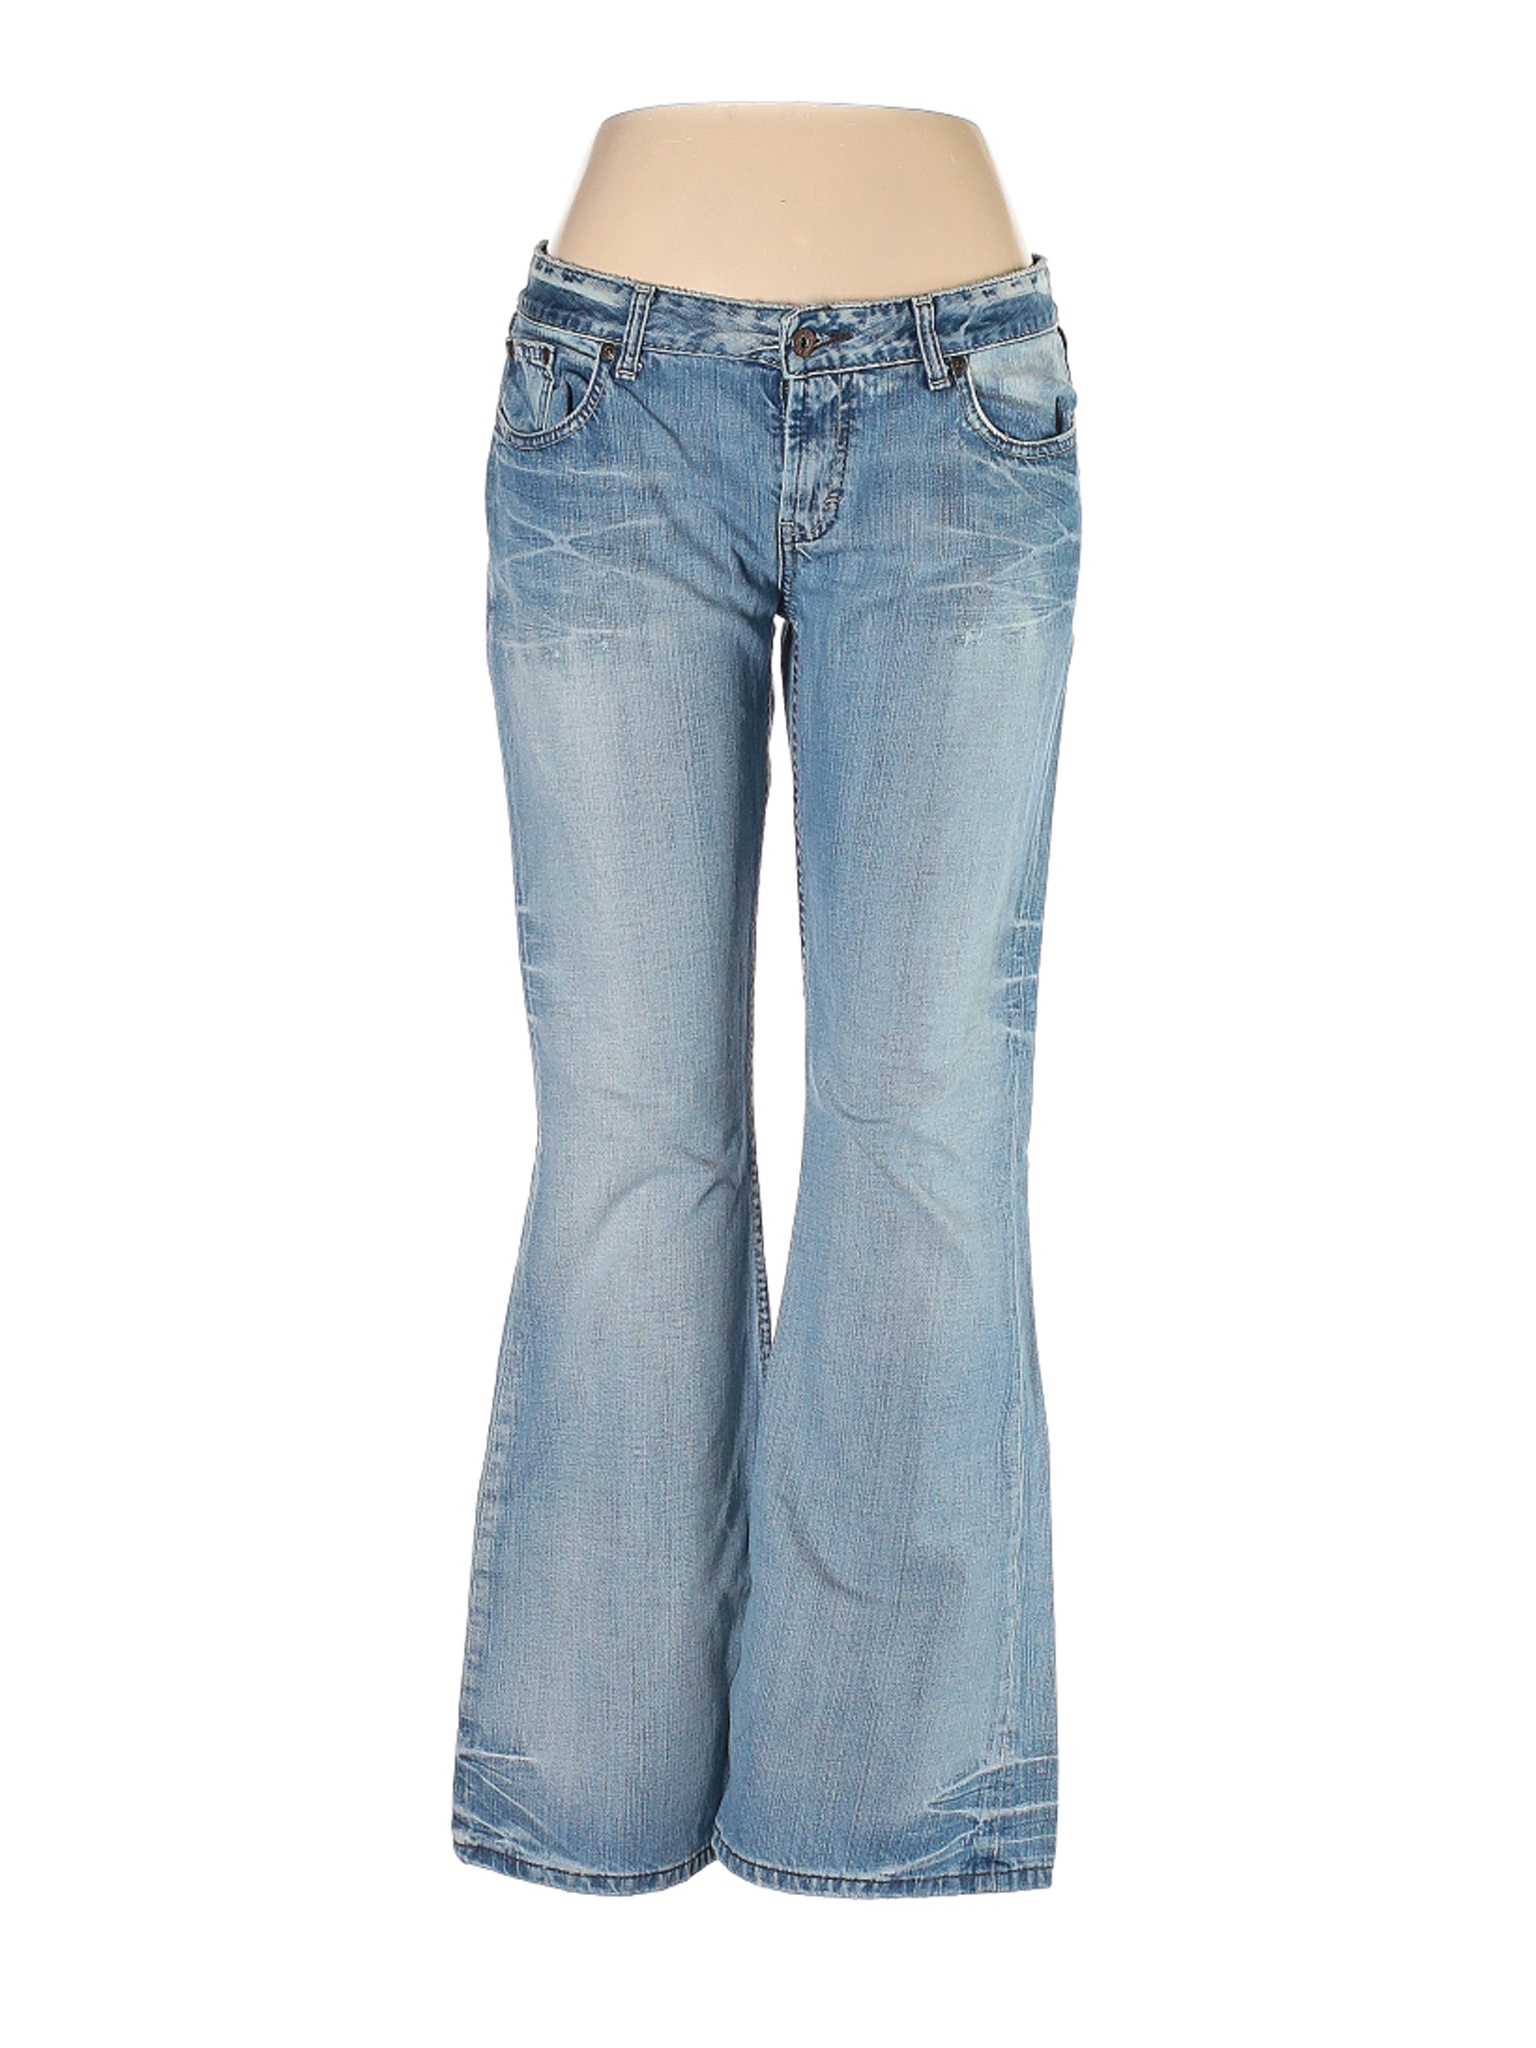 BKE Women Blue Jeans 32W | eBay